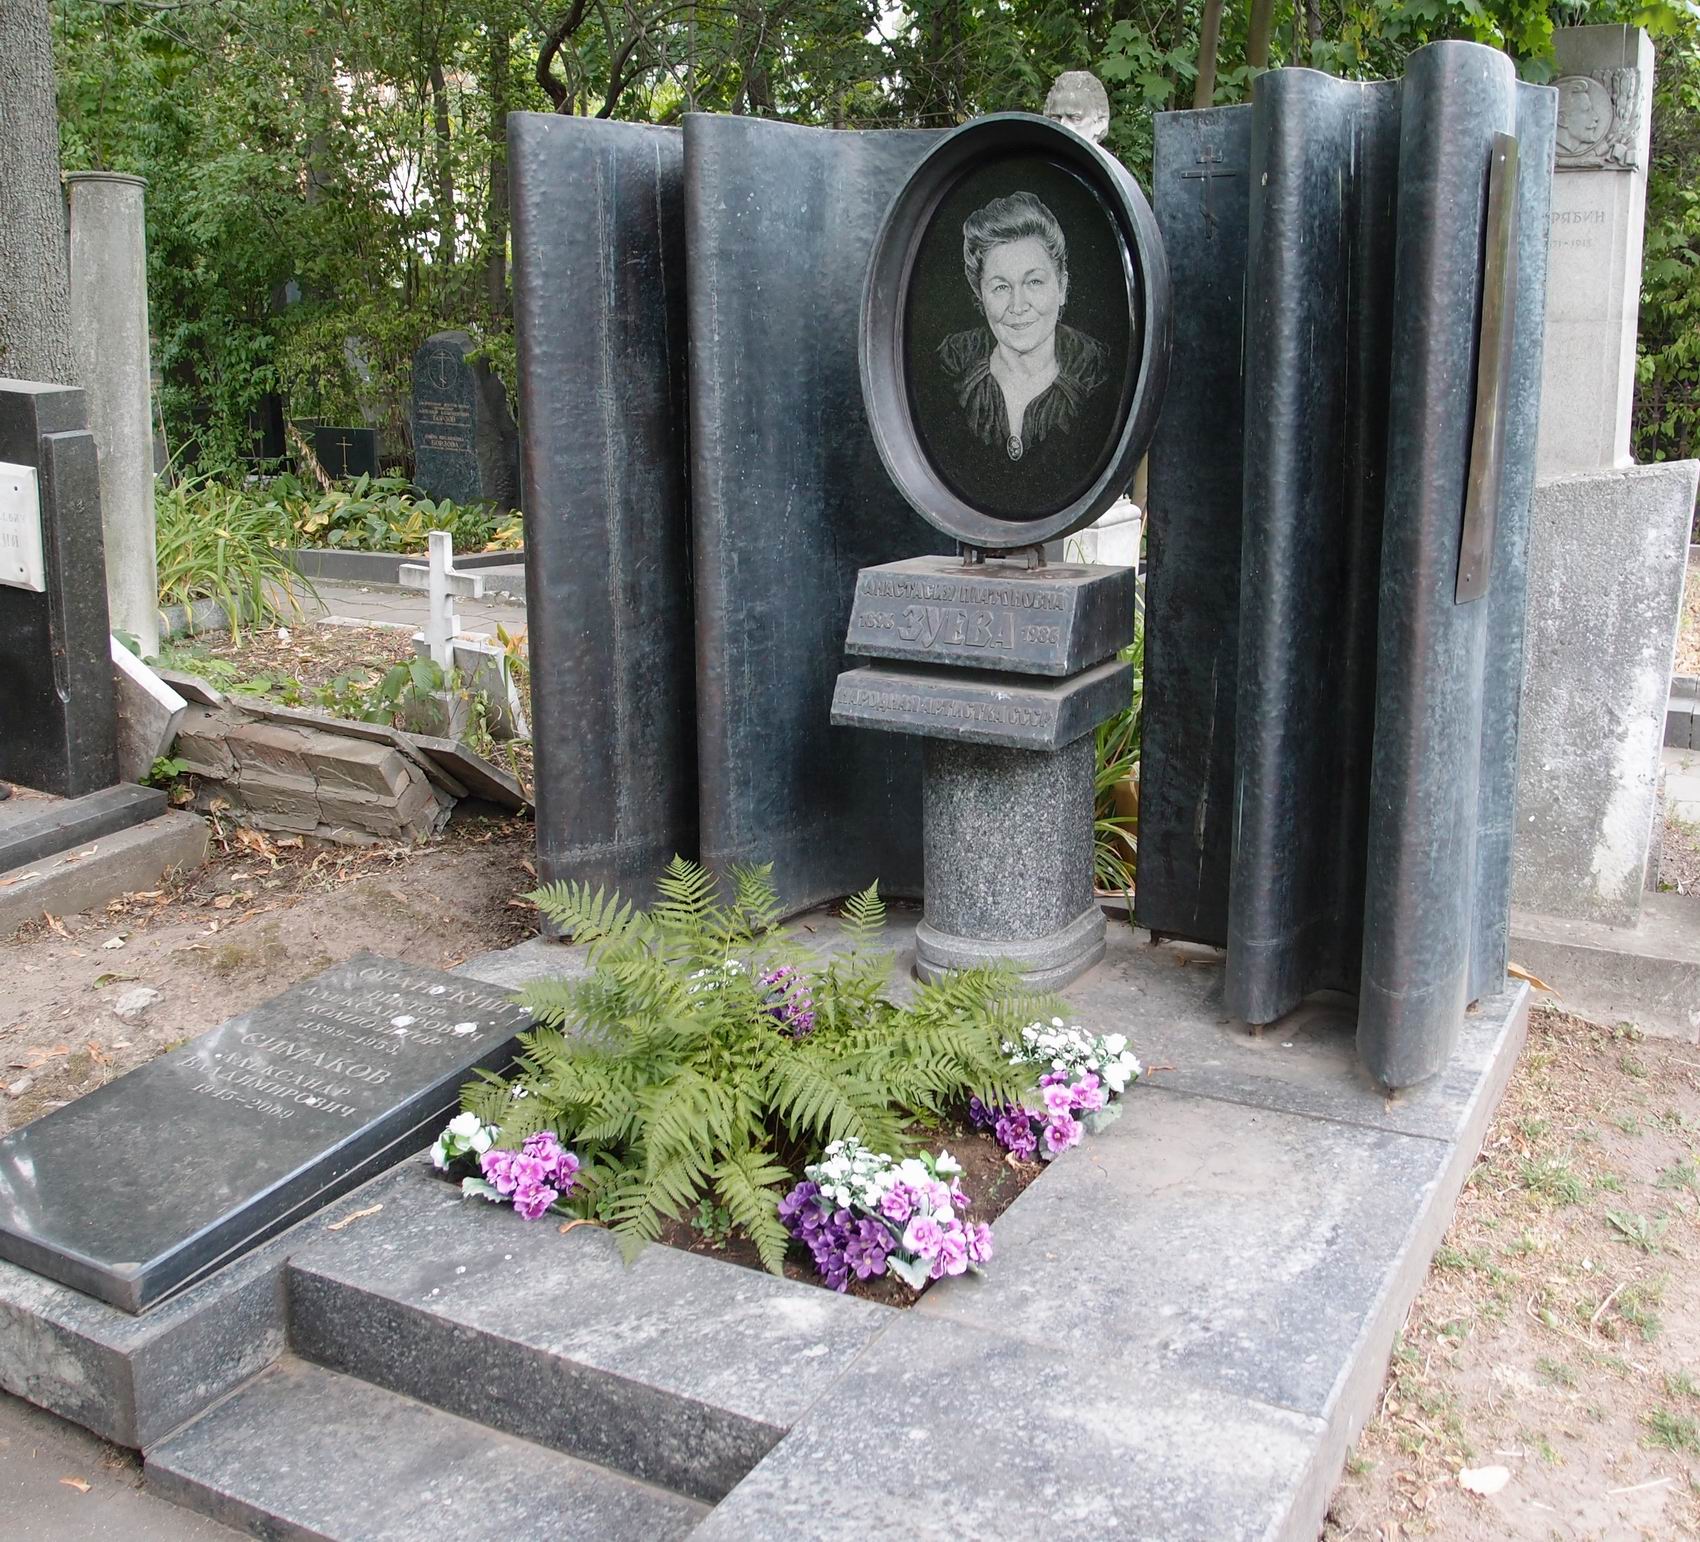 Памятник на могиле Зуевой А.П. (1896–1986), арх. Н.Миловидов, на Новодевичьем кладбище (3–42–1). Нажмите левую кнопку мыши чтобы увидеть фрагмент памятника.